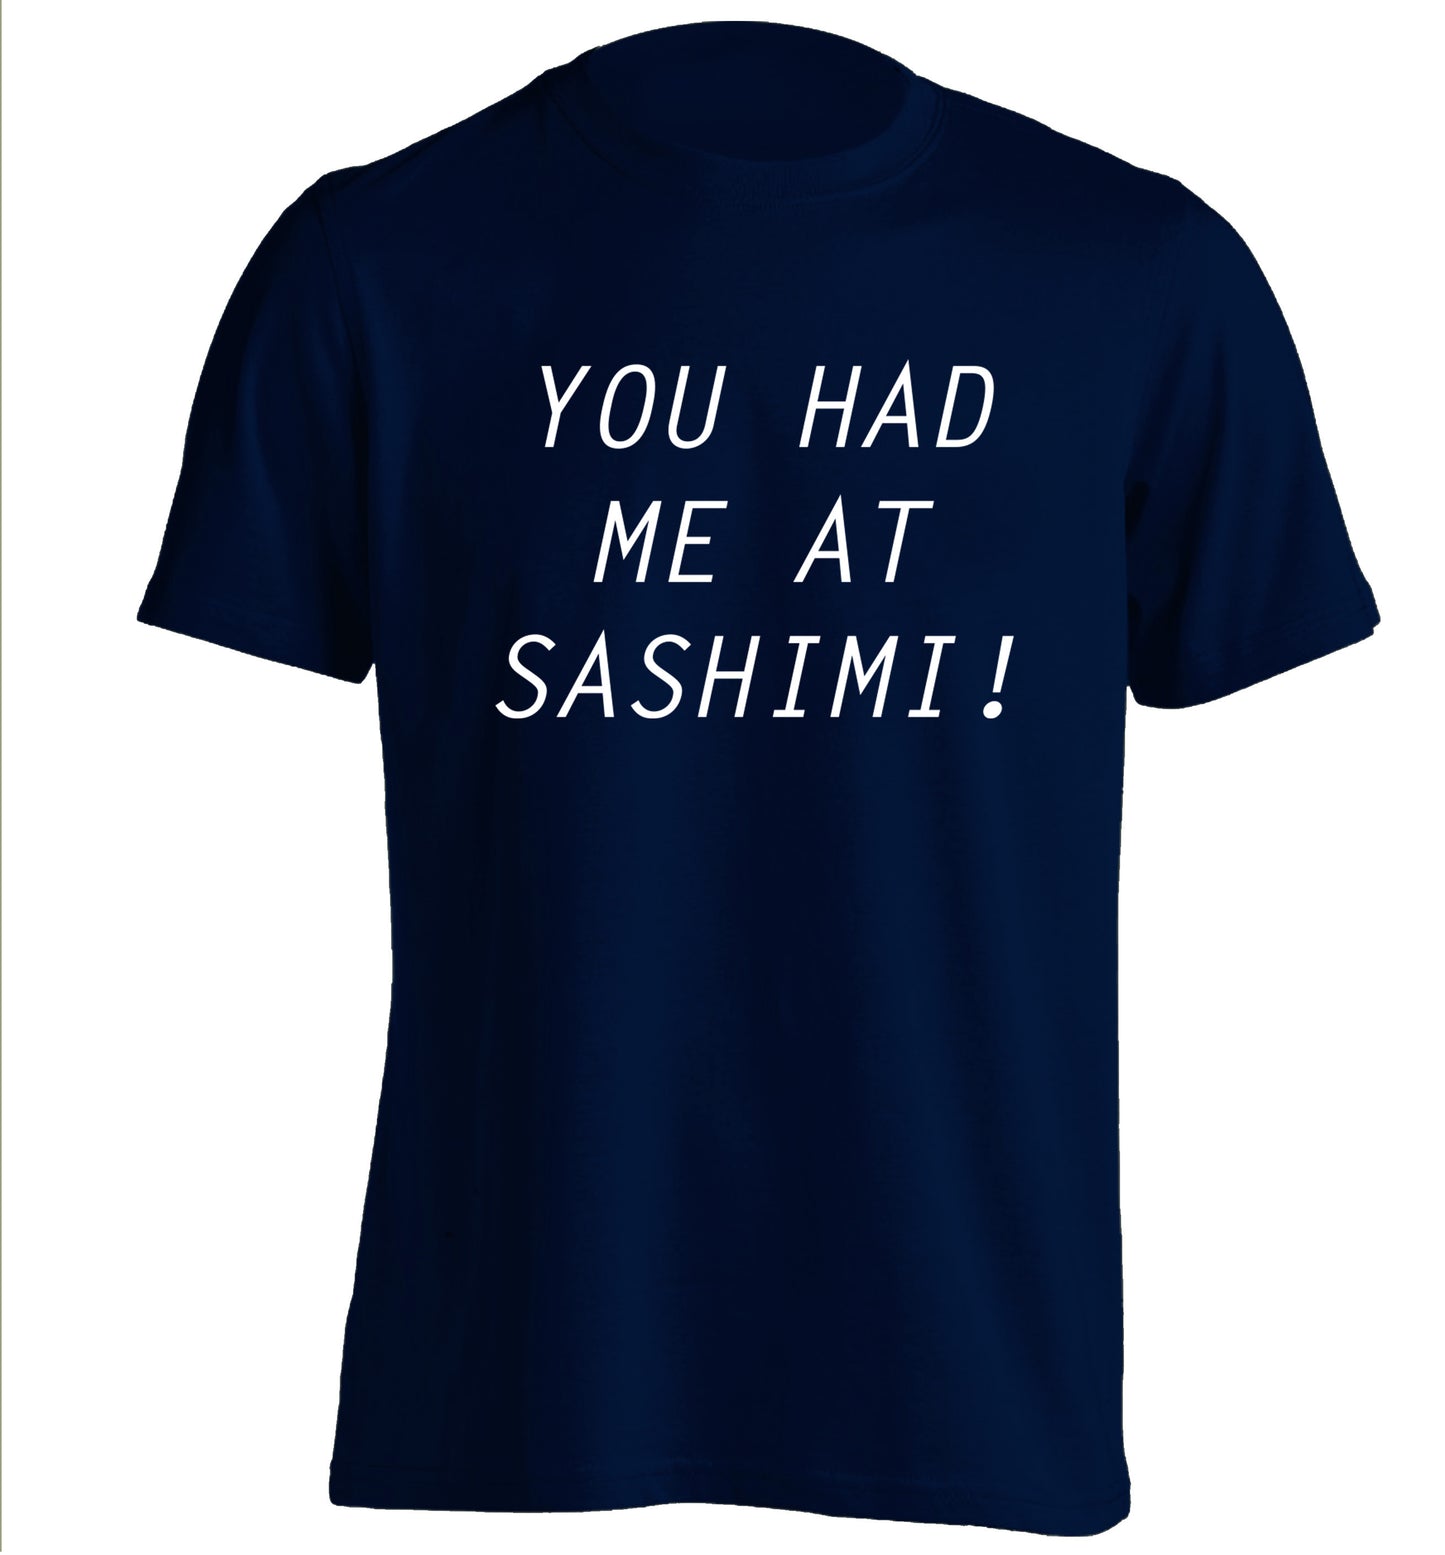 You had me at sashimi adults unisex navy Tshirt 2XL